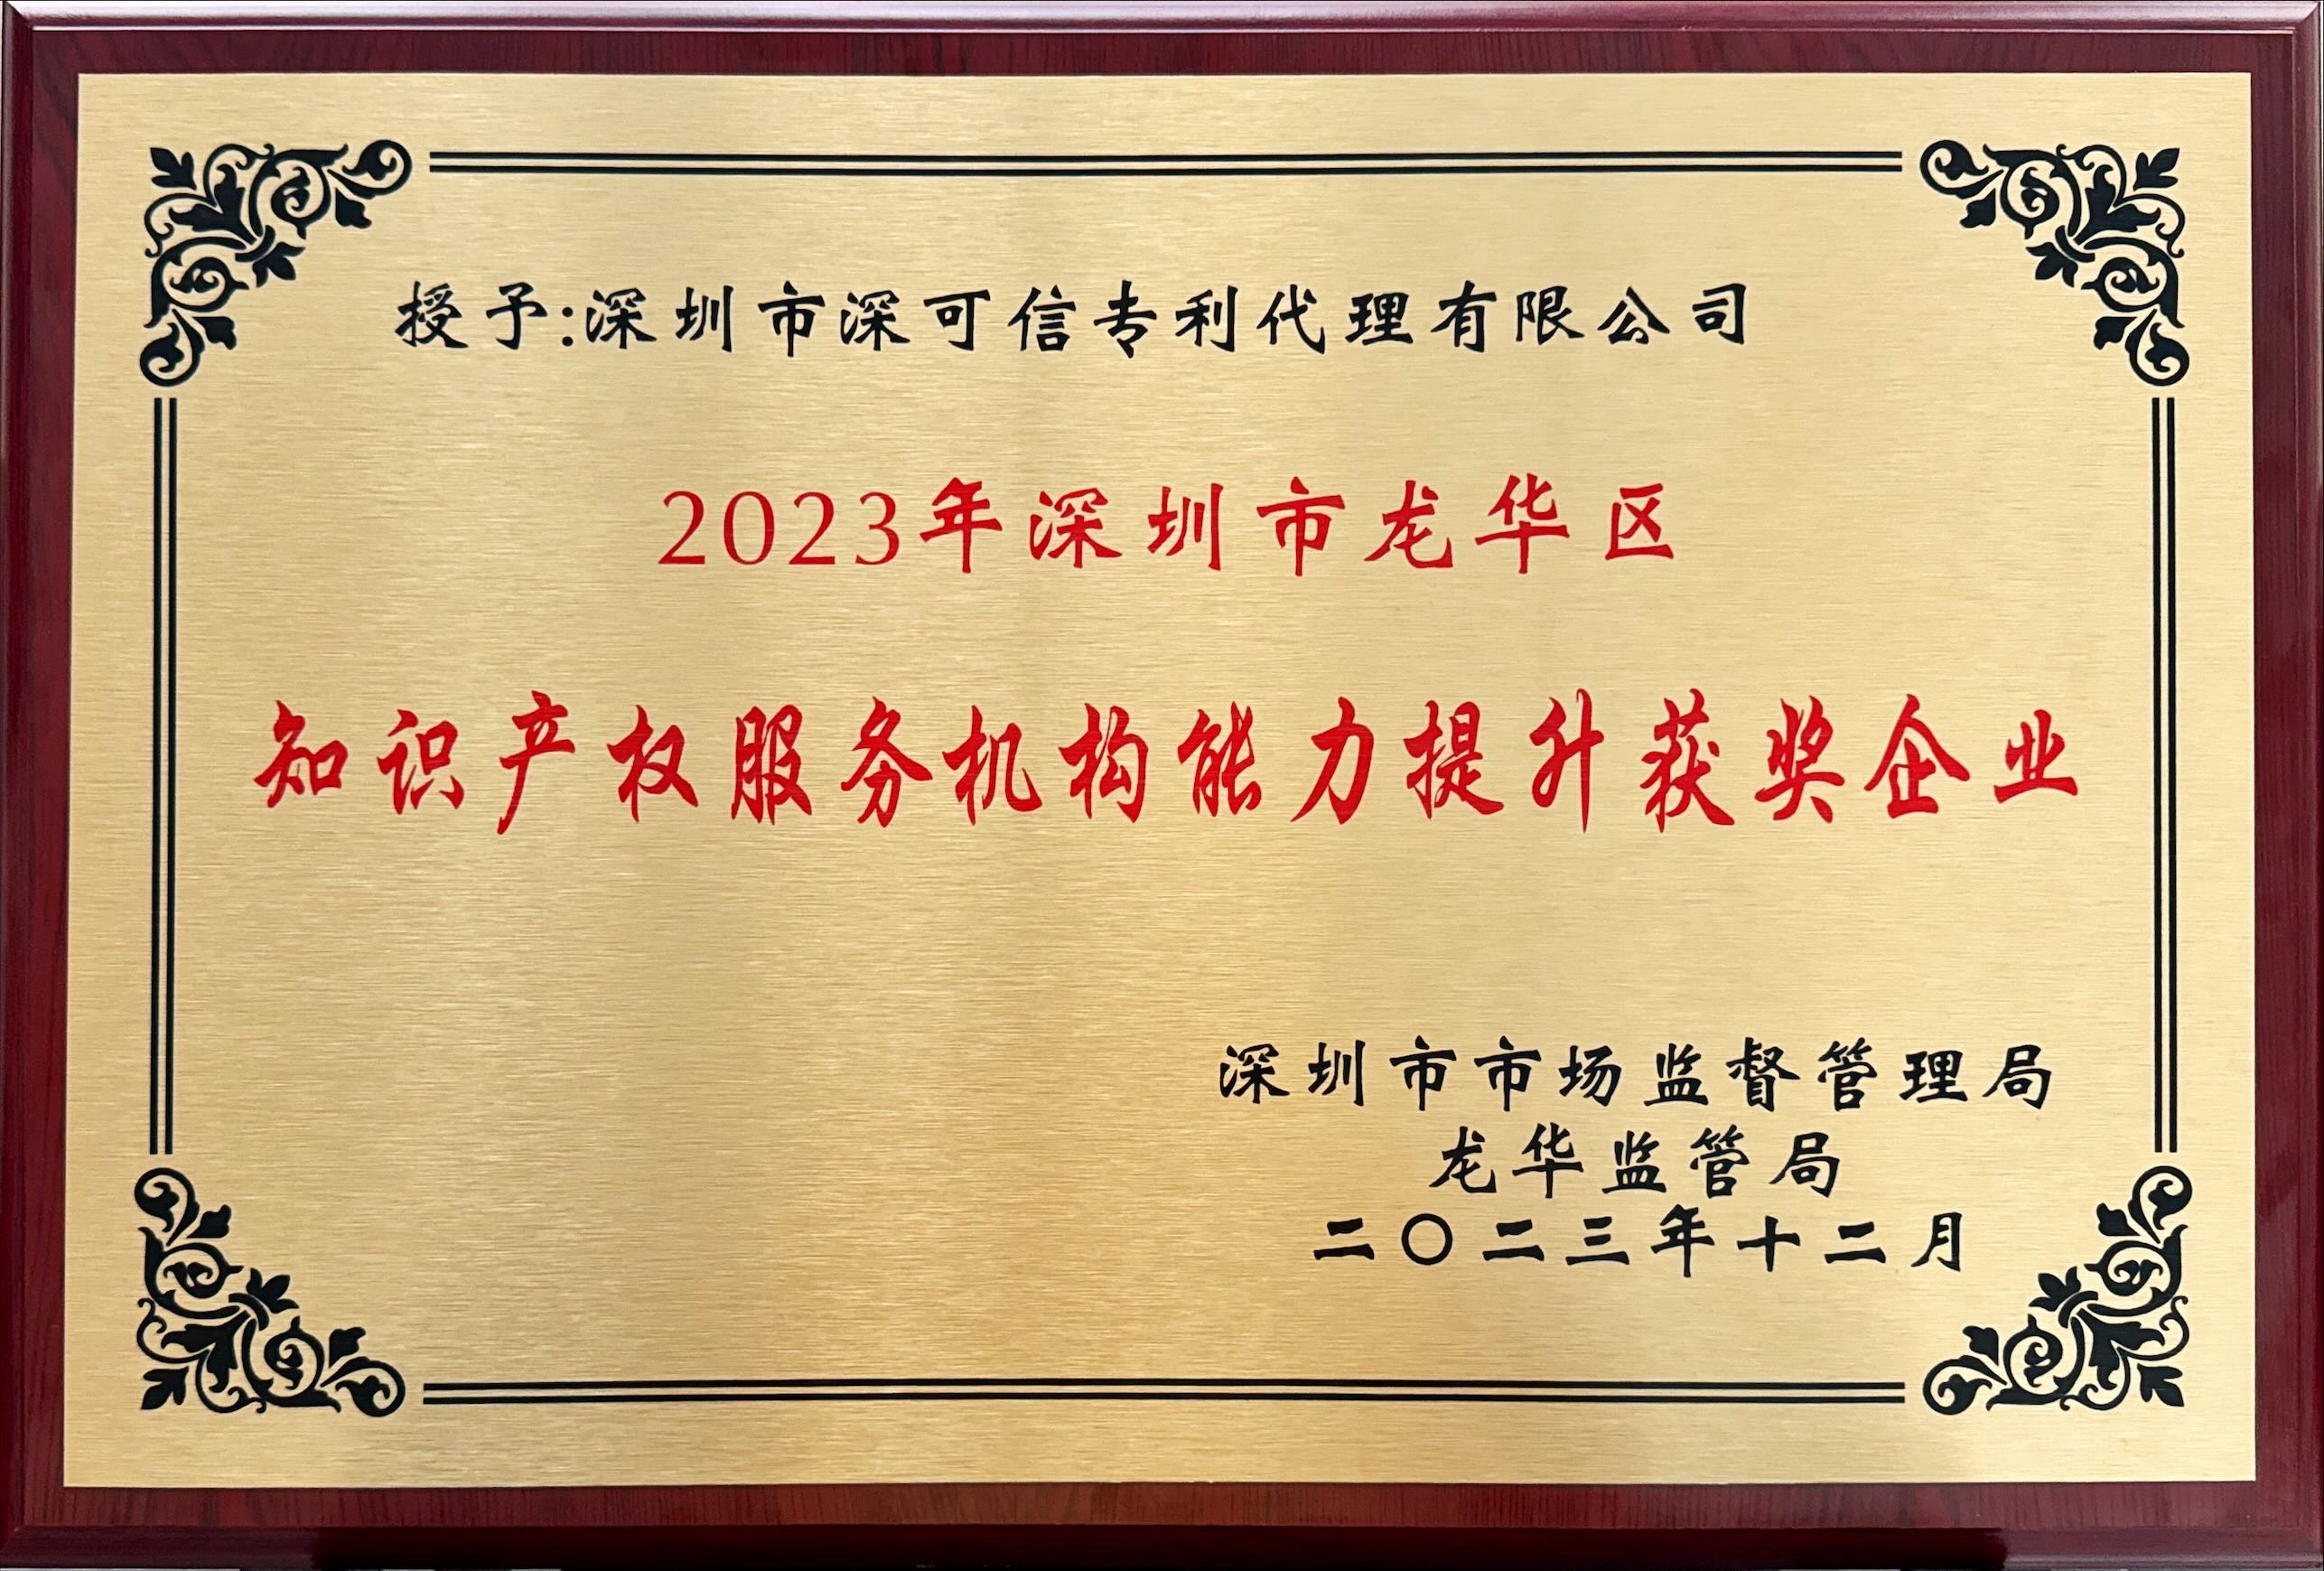 深圳市龙华区知识产权服务机构能力提升获奖企业